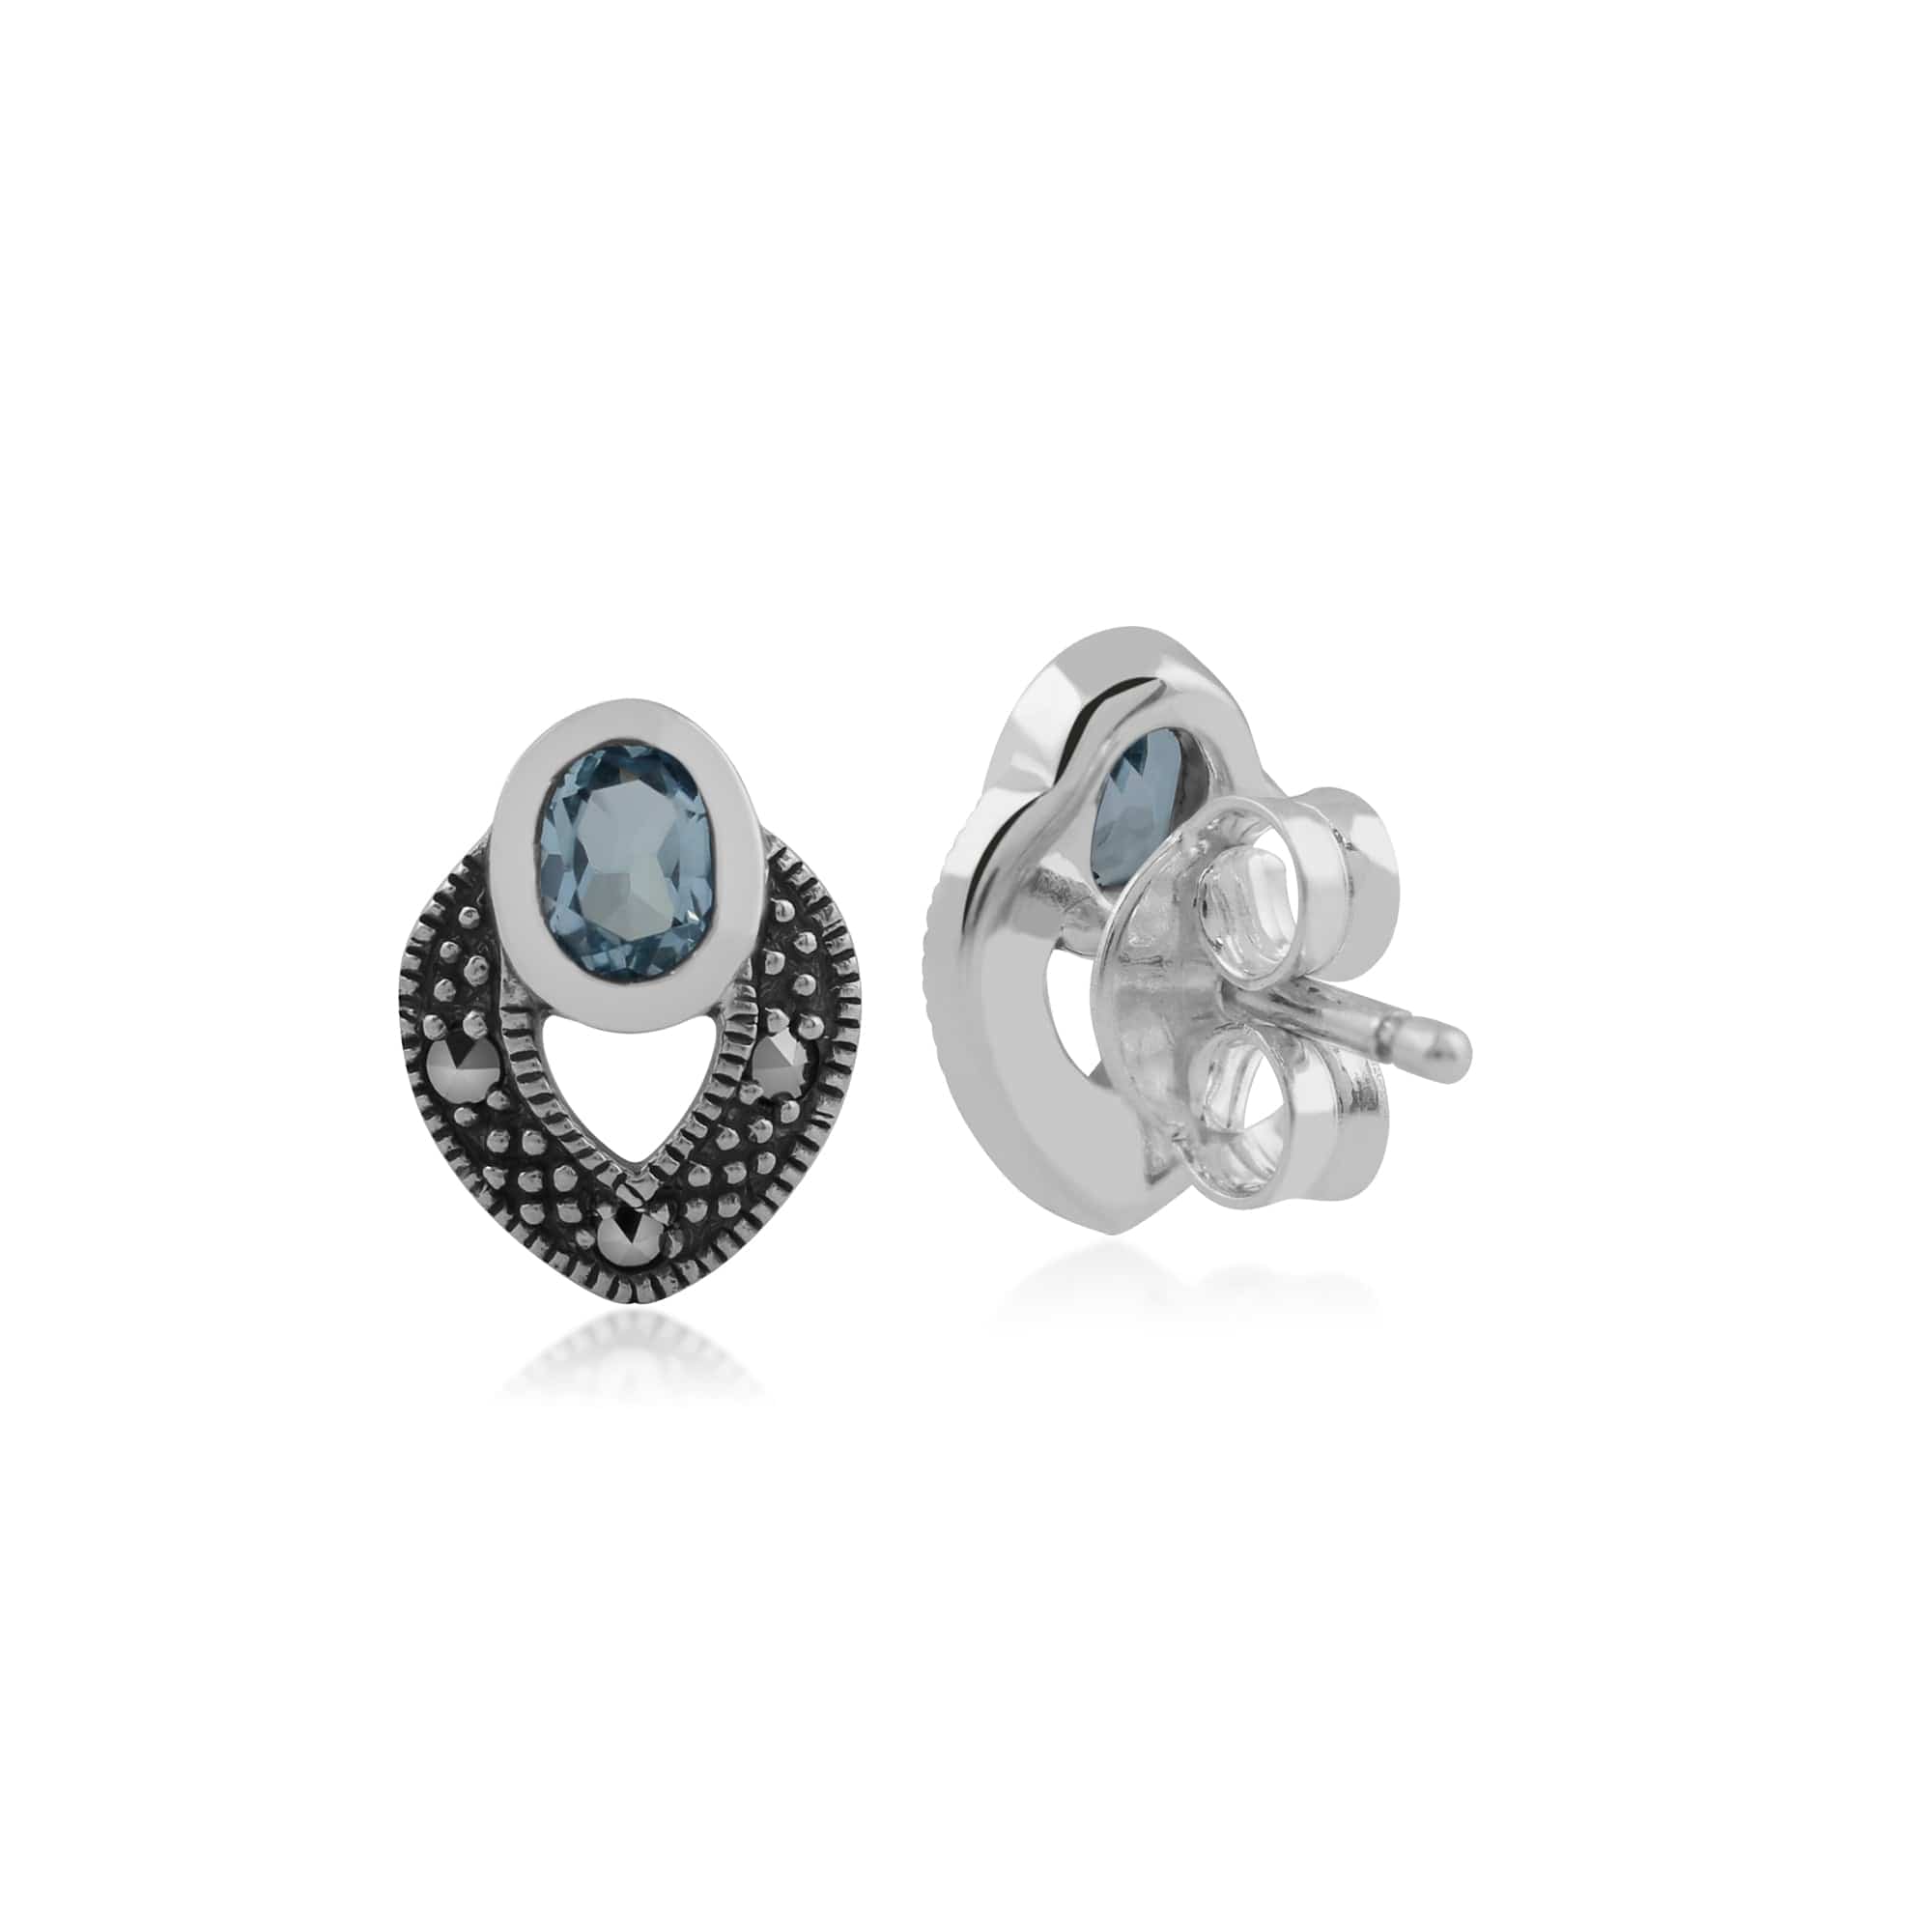 214E717806925 Art Deco Style Oval Blue Topaz & Marcasite Stud Earrings in 925 Sterling Silver 2